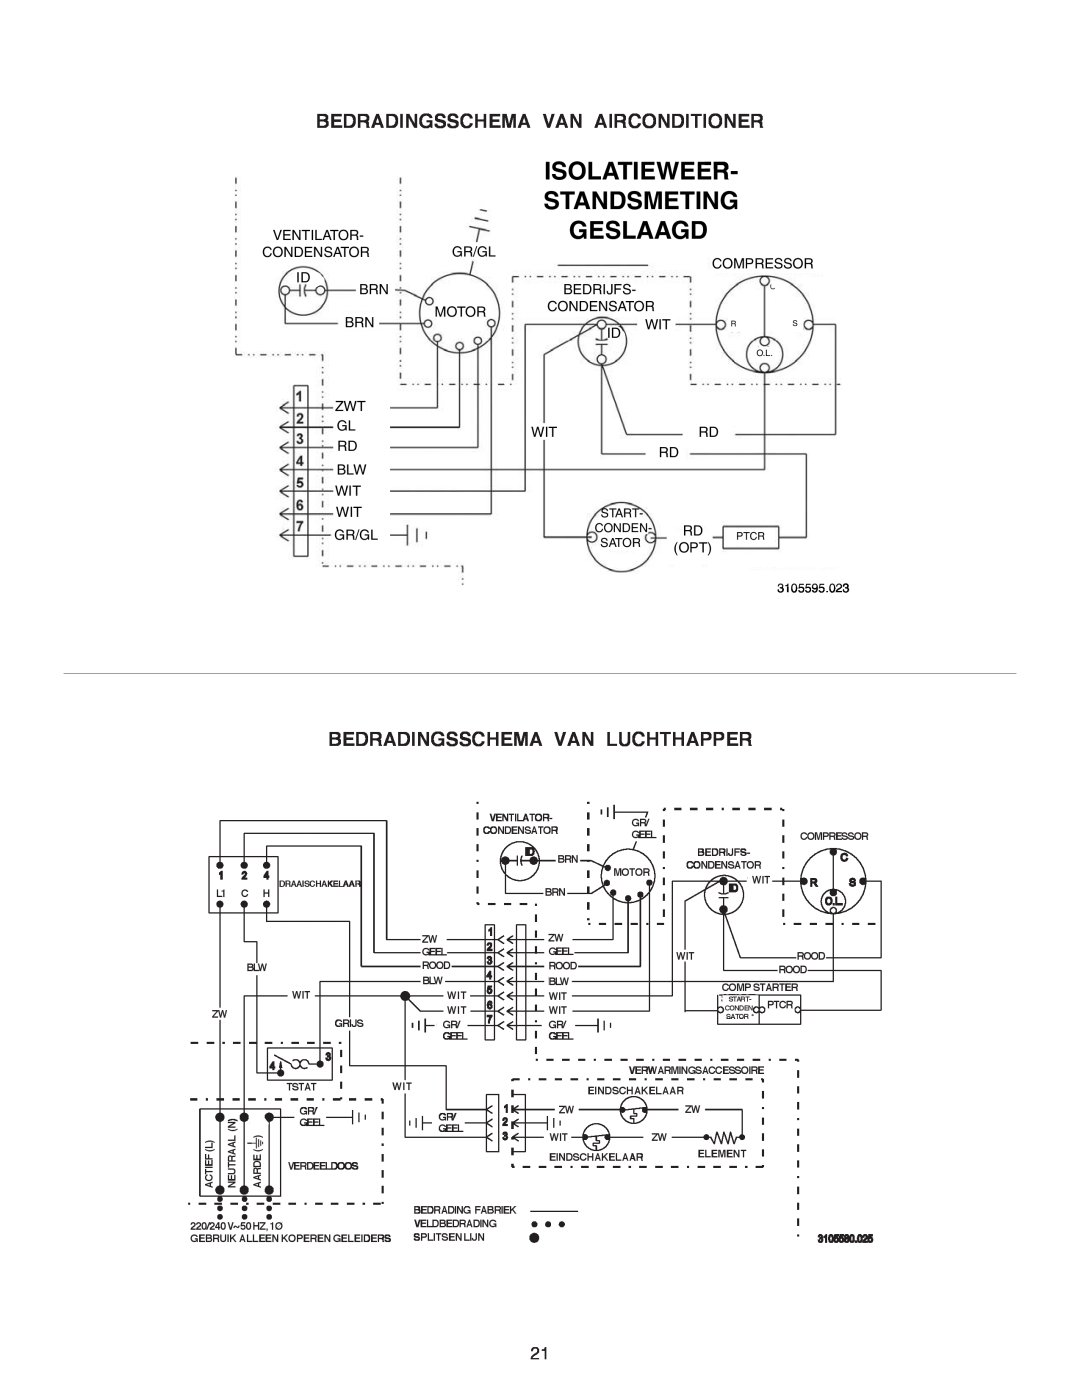 Dometic B3200 manual Isolatieweer Standsmeting, Bedradingsschema Van Airconditioner, Bedradingsschema Van Luchthapper 